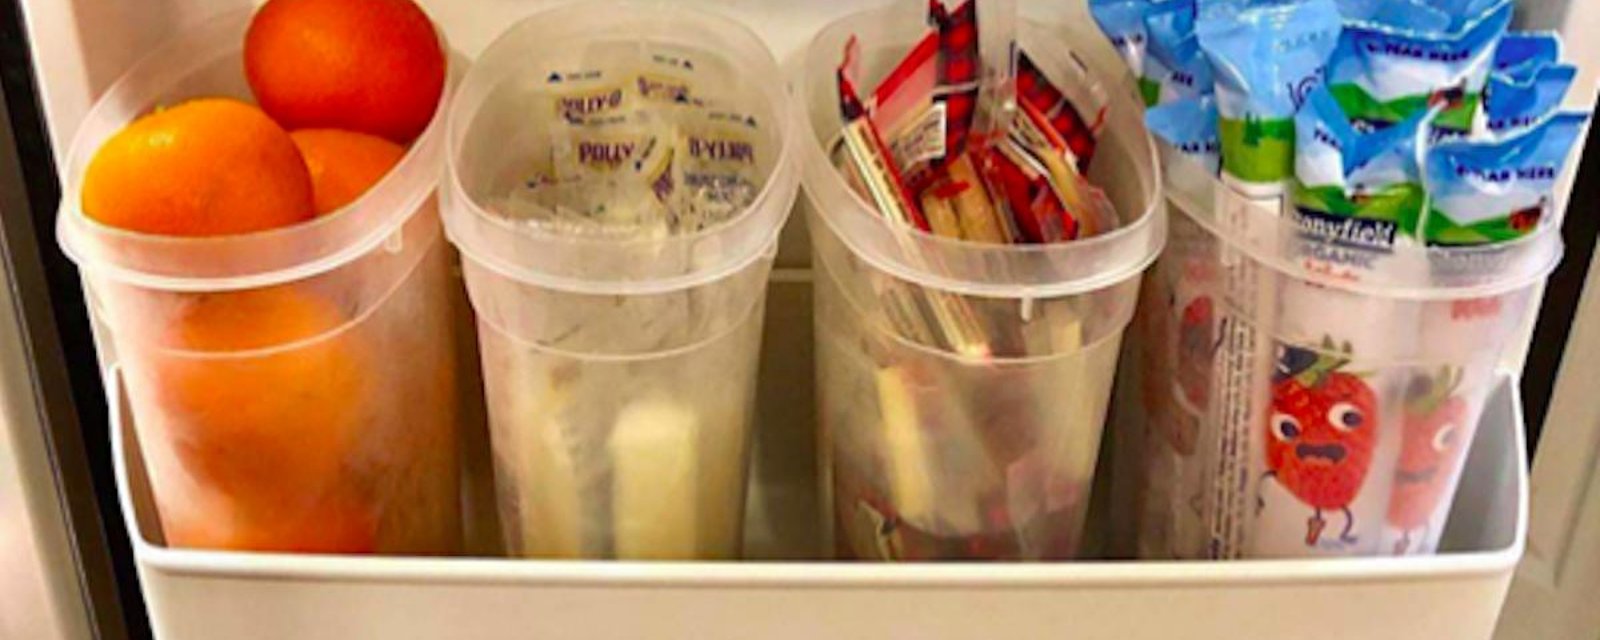 Pour que ses enfants mangent sainement et de façon autonome, cette mère leur a installé un « libre-service » dans le frigo